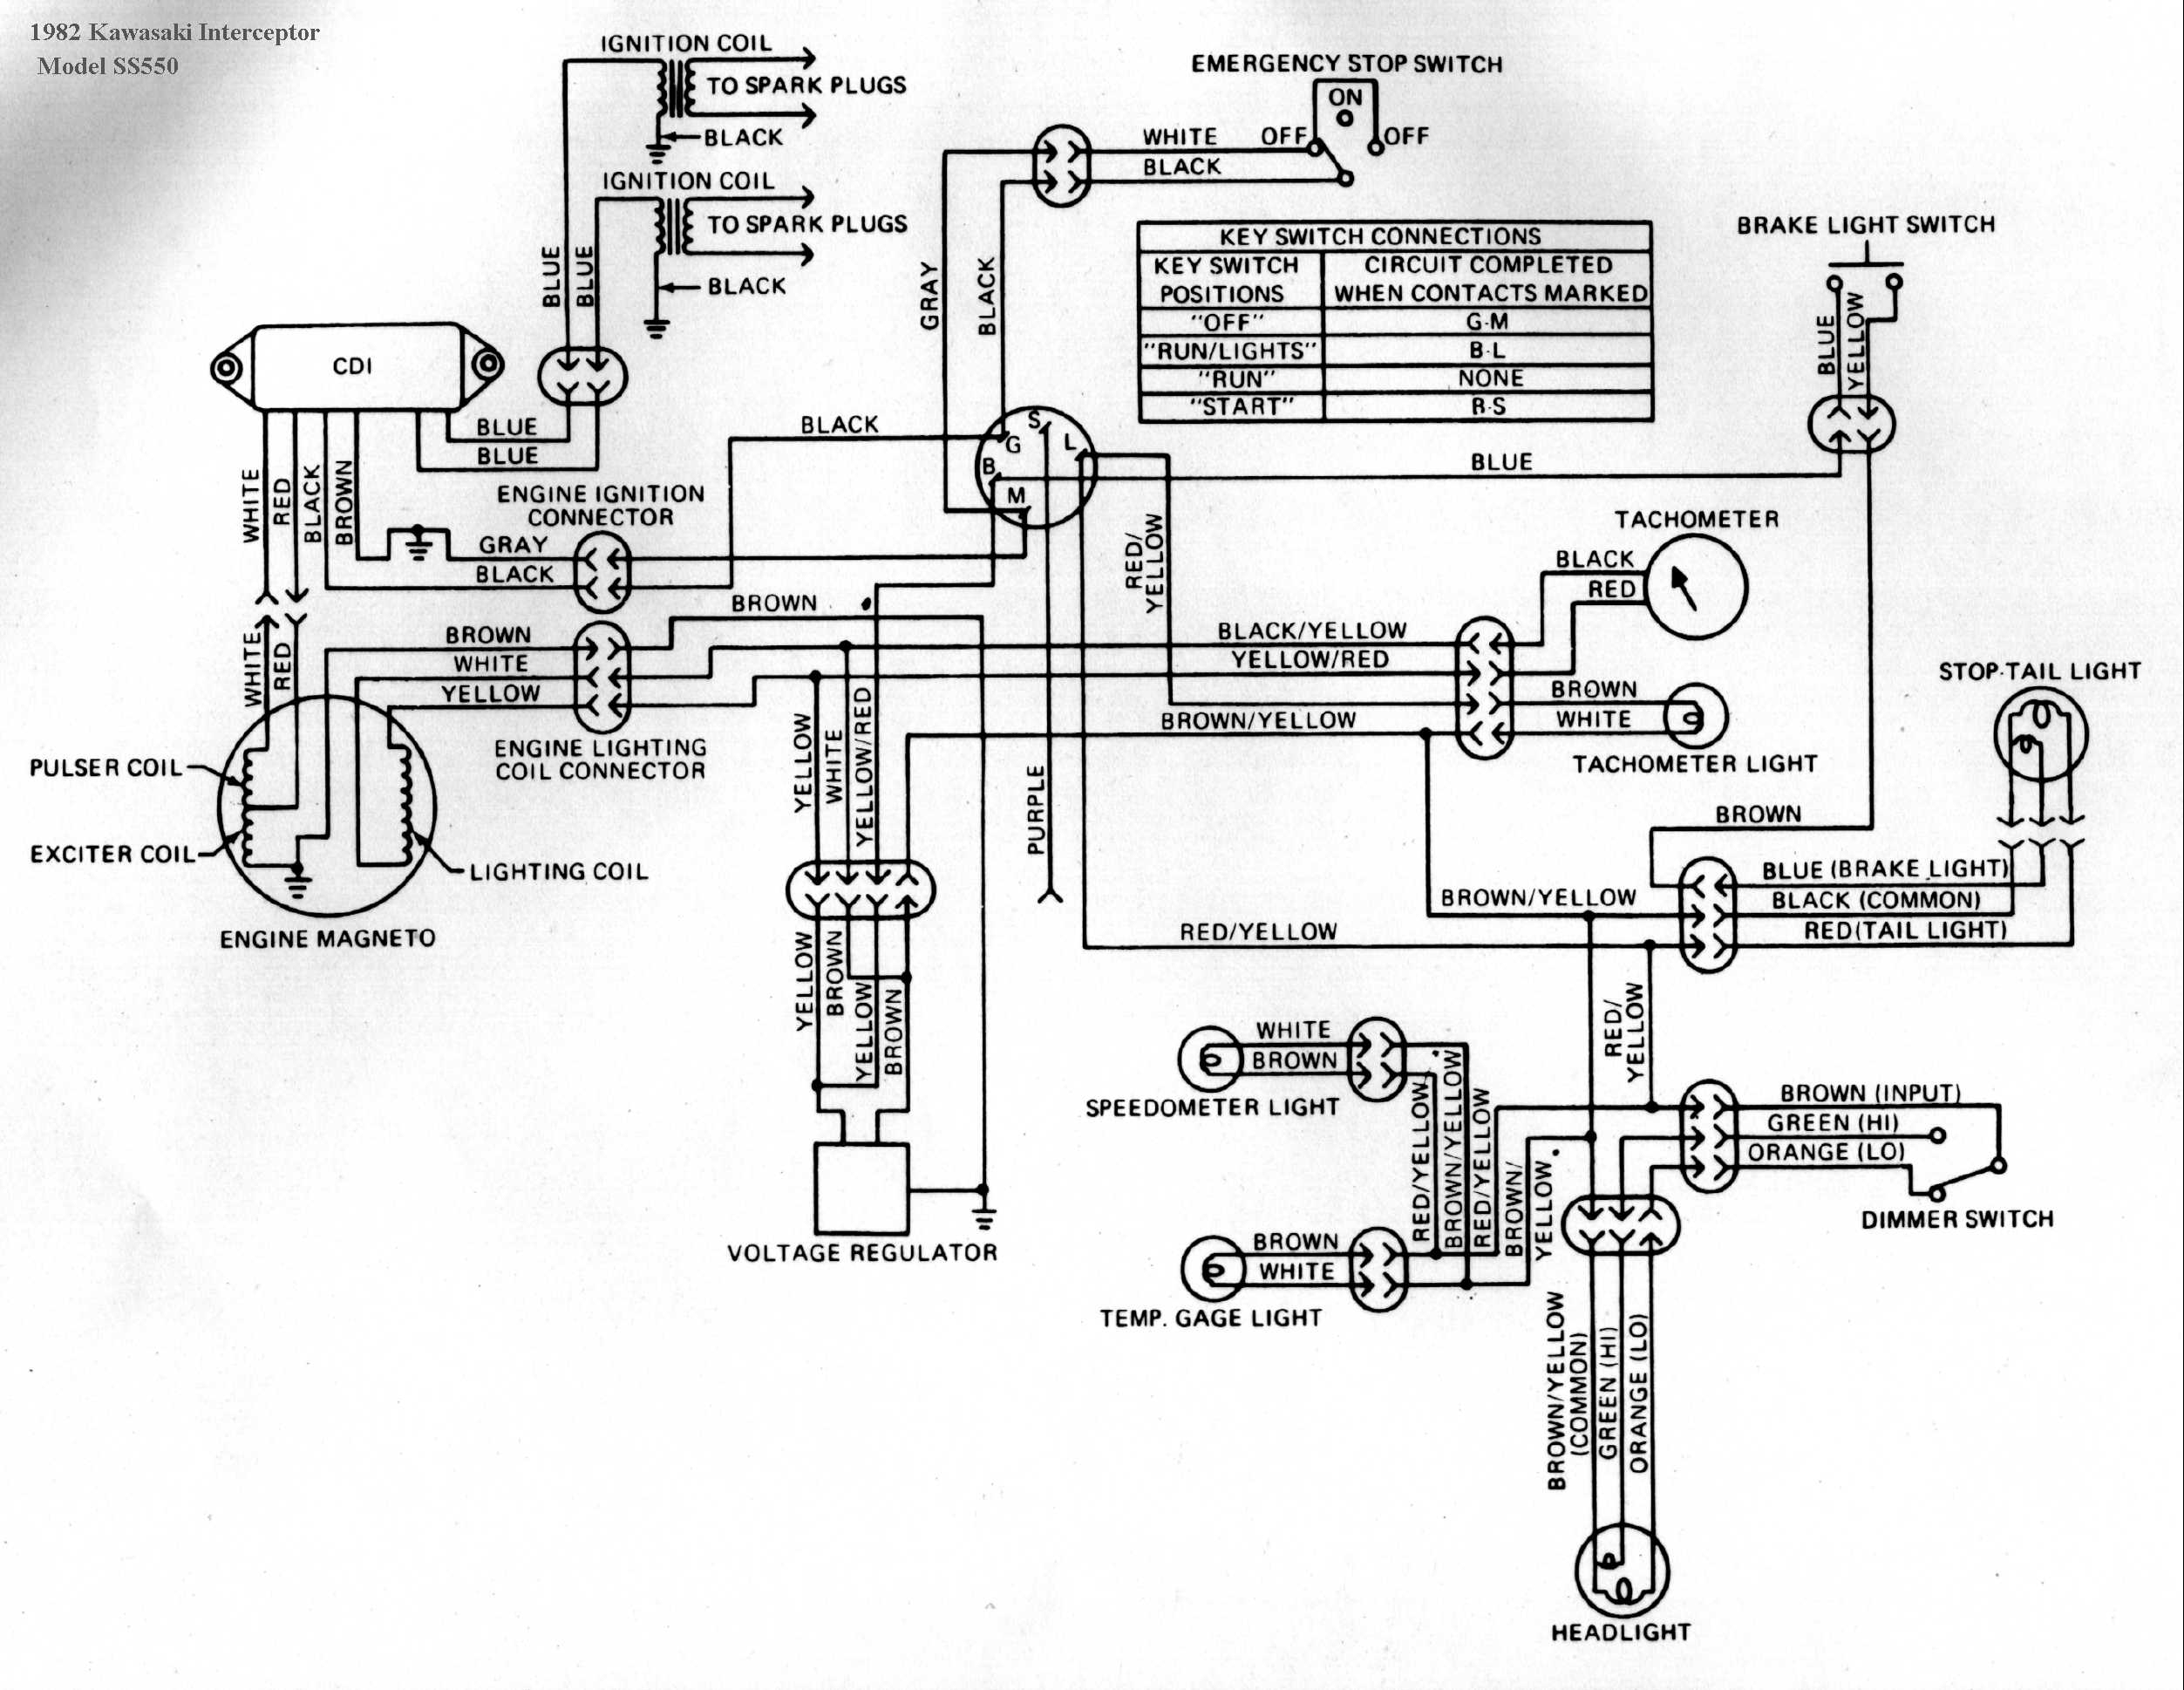 Kawasaki Invader Wiring Diagram | Wiring Diagram - 220 Wiring Diagram